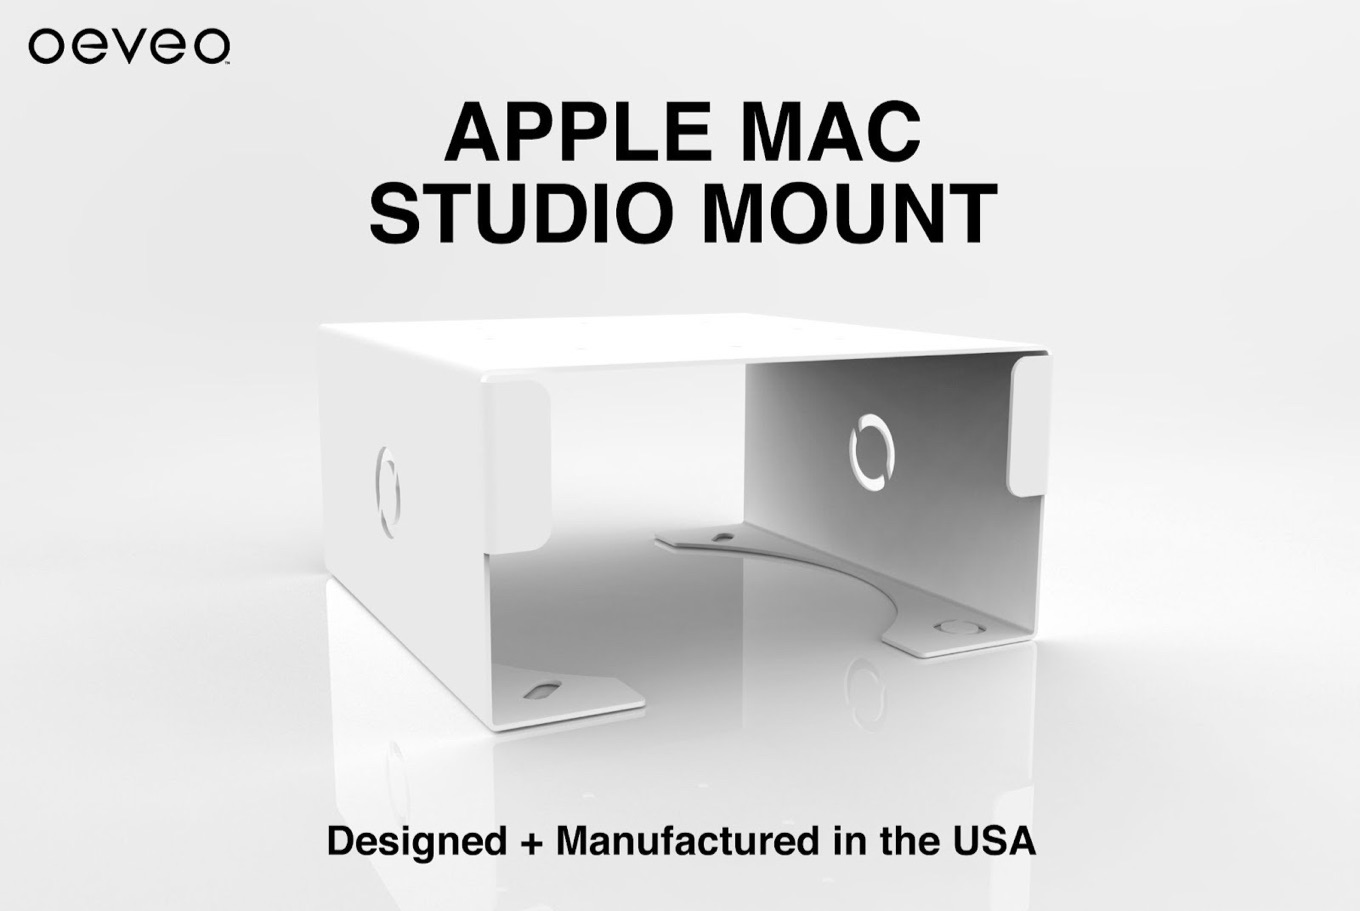 Oeveo Apple Mac Studio Mount